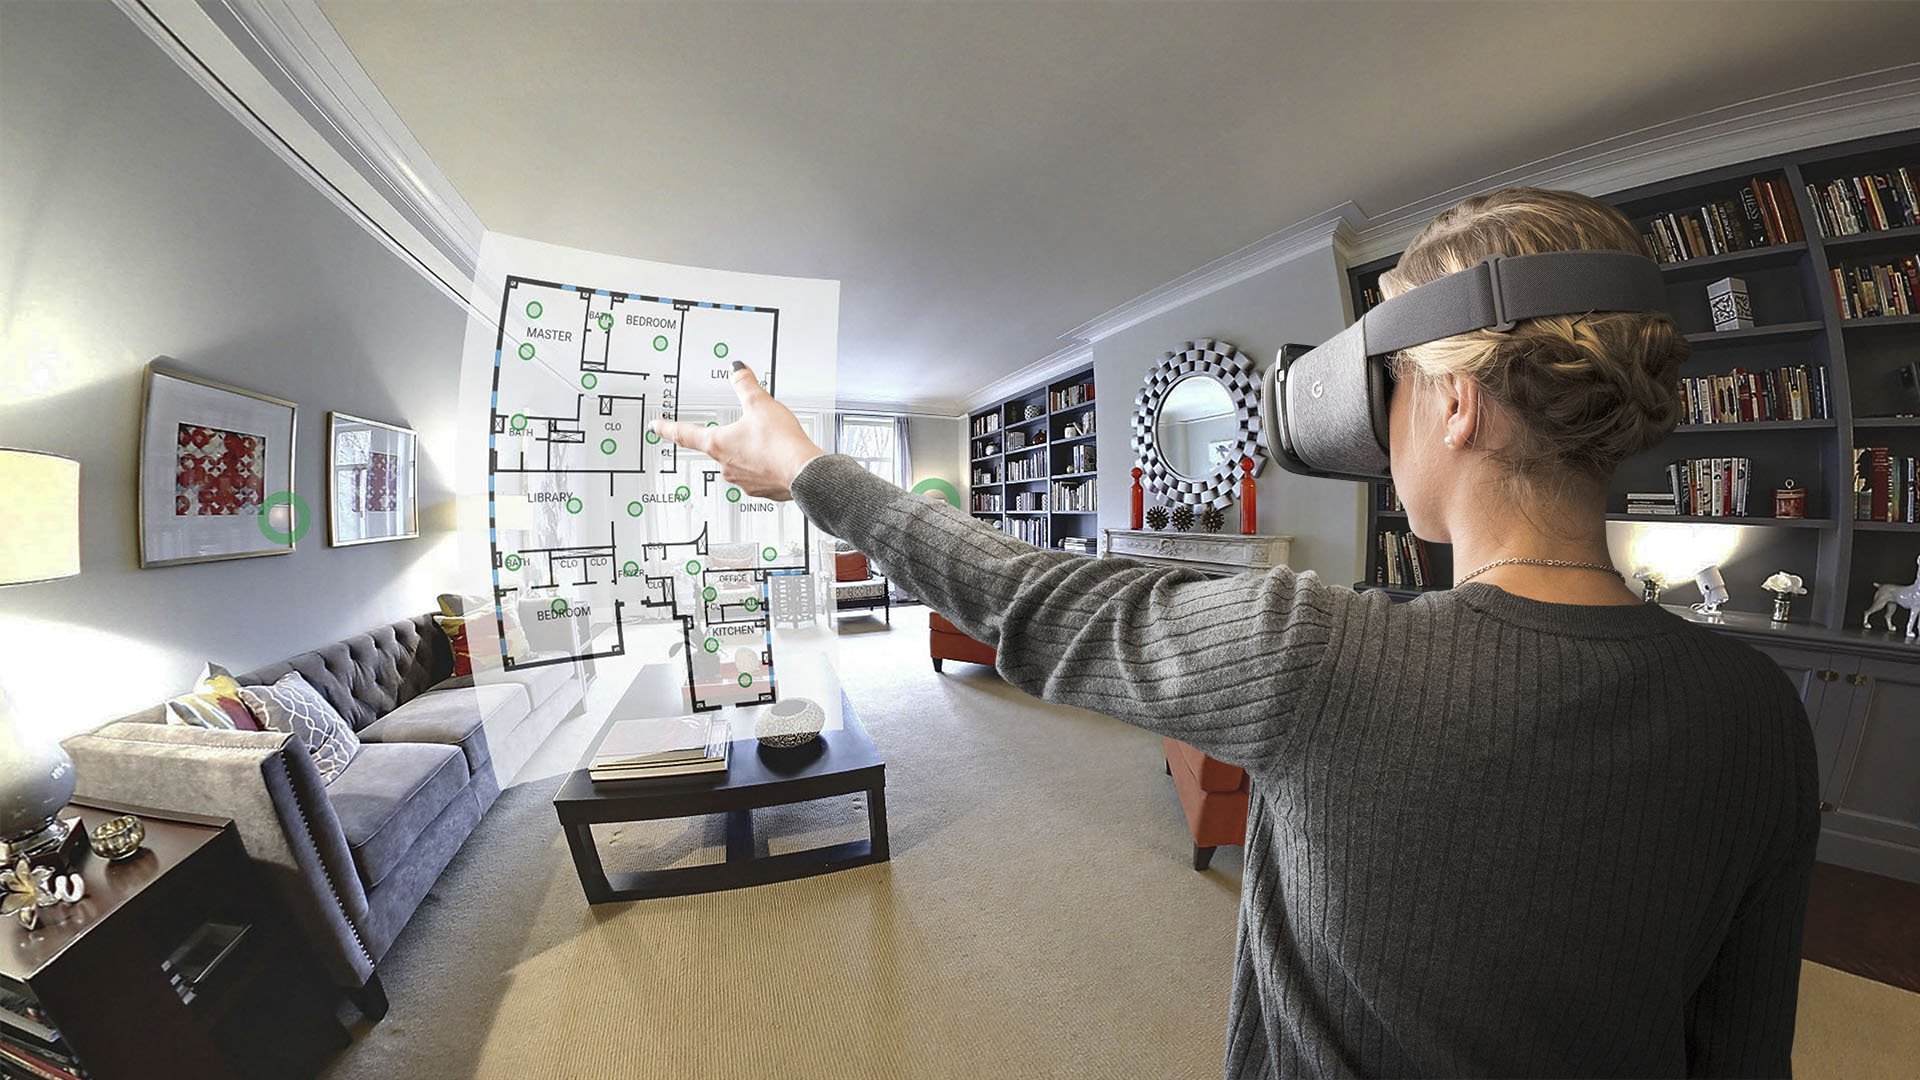 Видео экскурсия. Дизайнер виртуальной реальности. Архитектор и дизайнер виртуальной реальности. Интерьер комнаты виртуальной реальности. Виртуальная реальность интерьер.